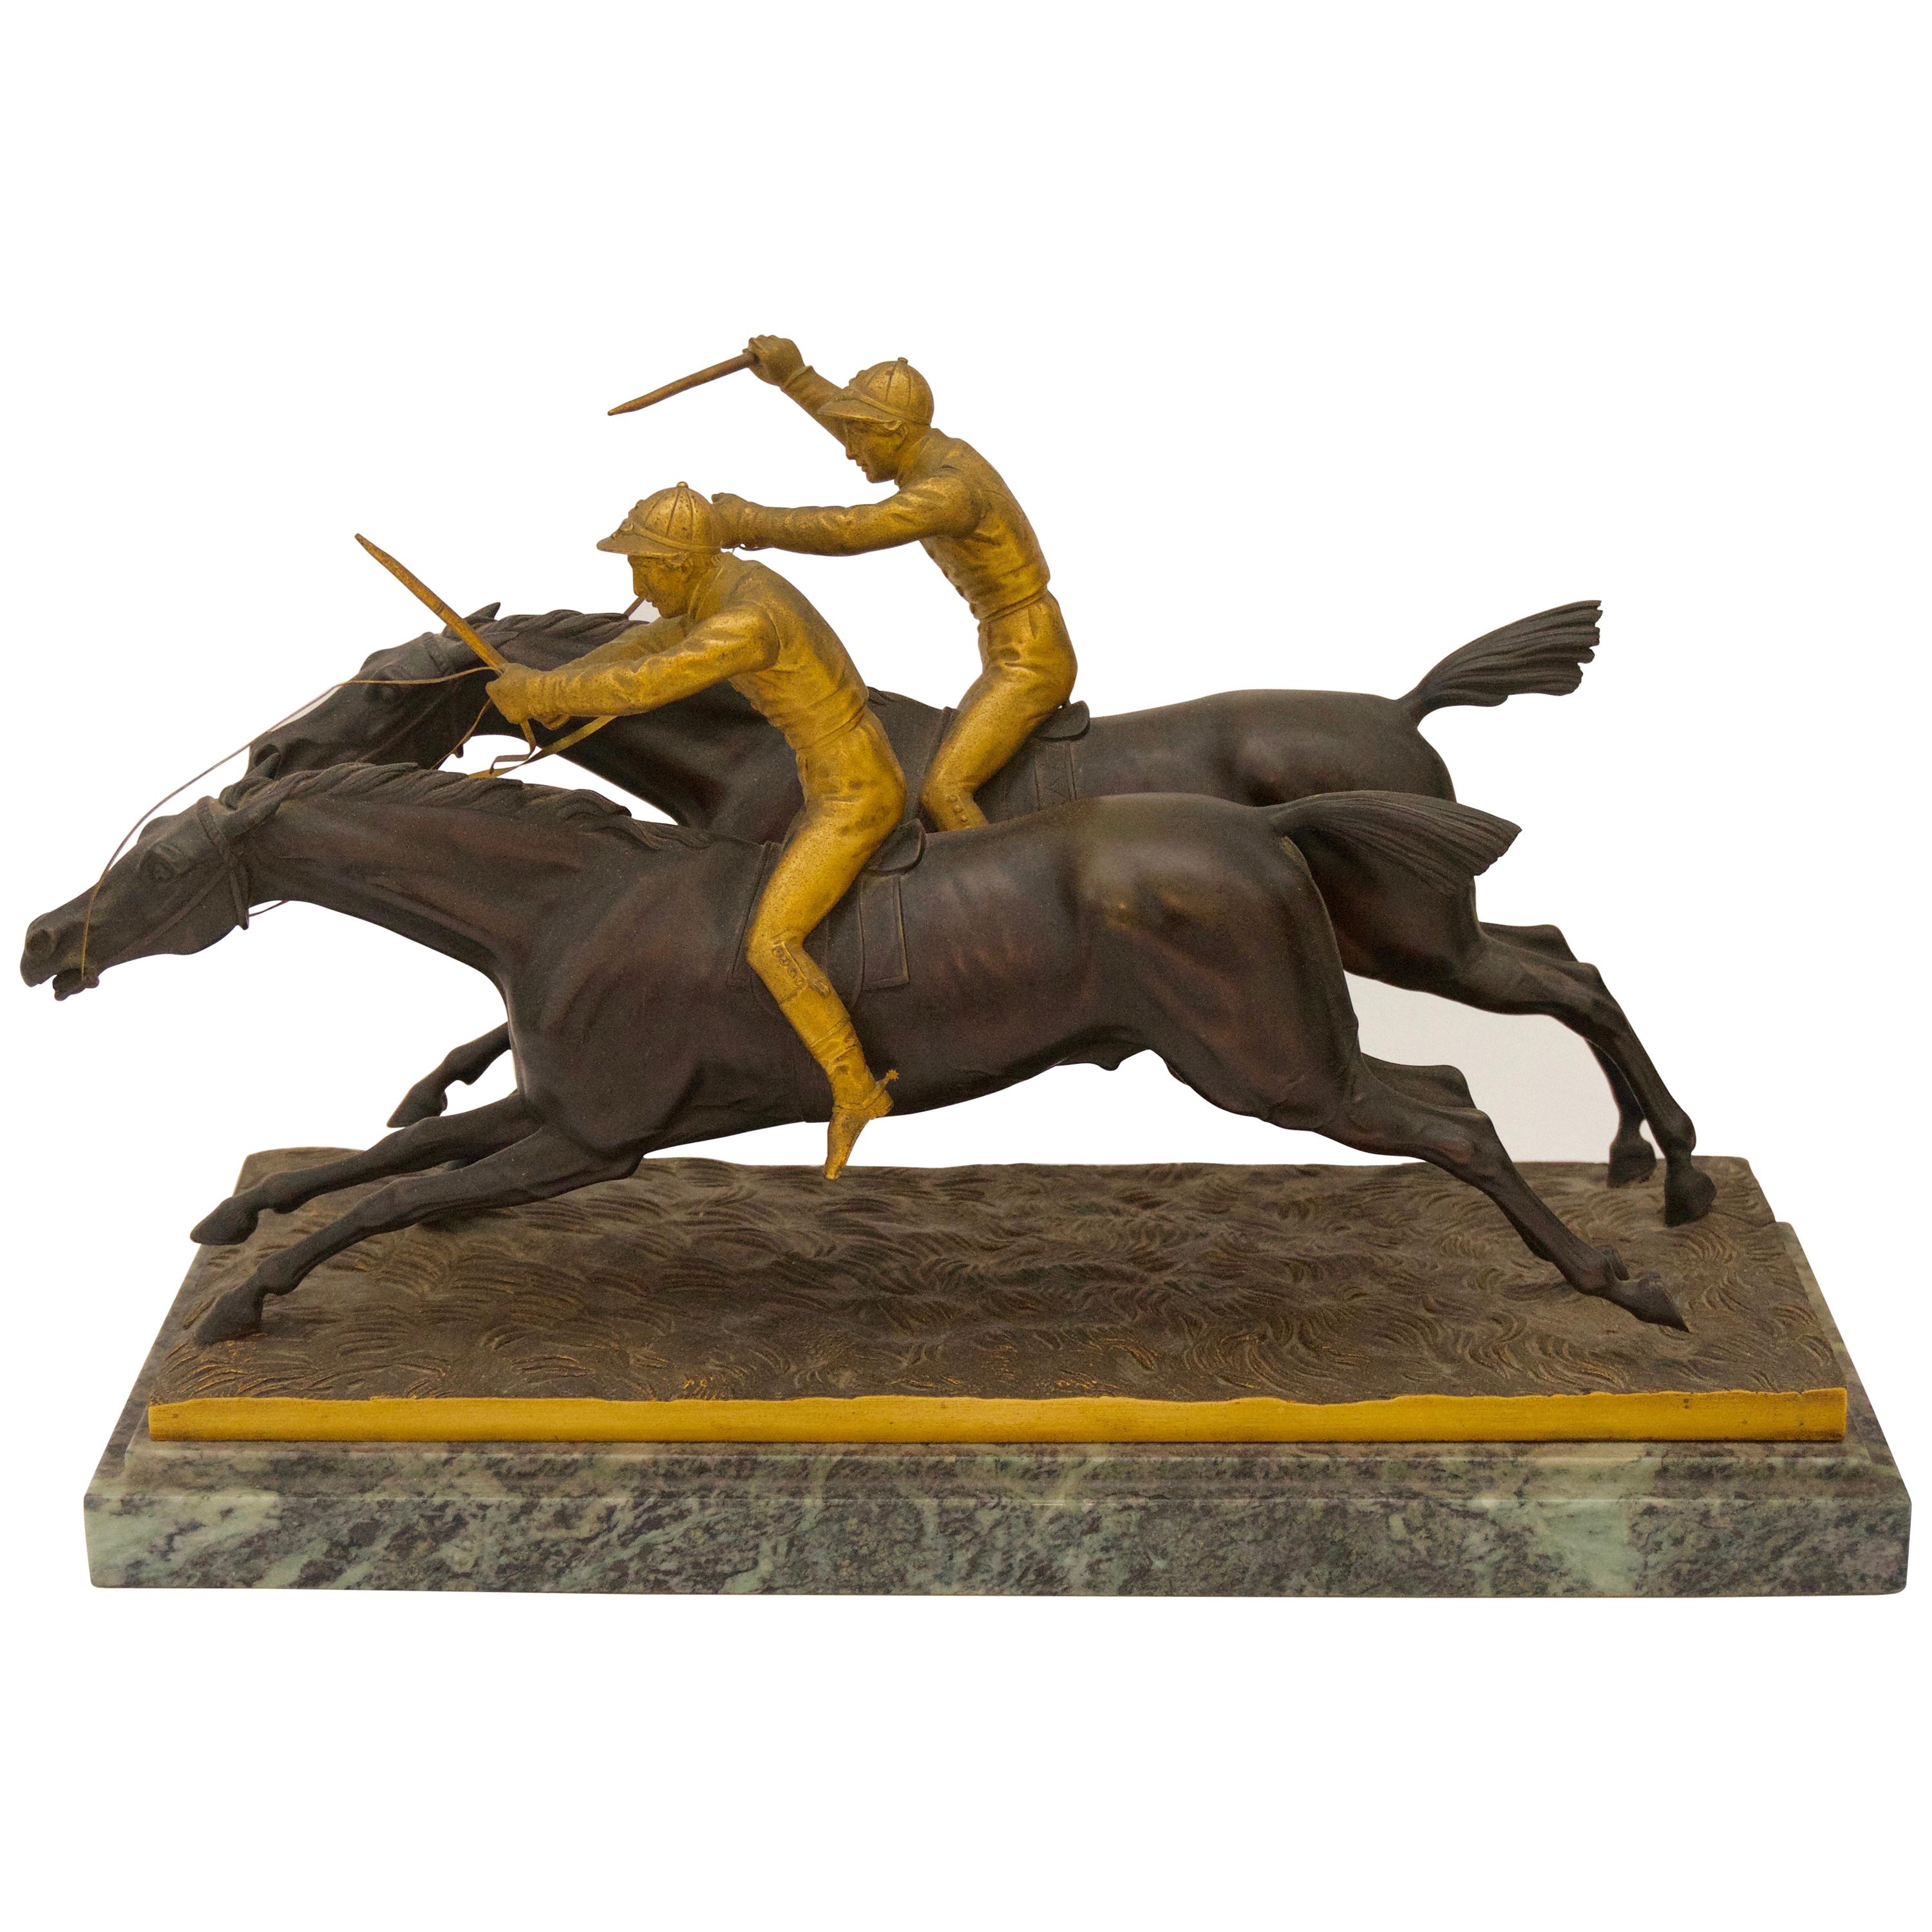 Bronzeskulptur von zwei Reiter Jockeys aus Bronze